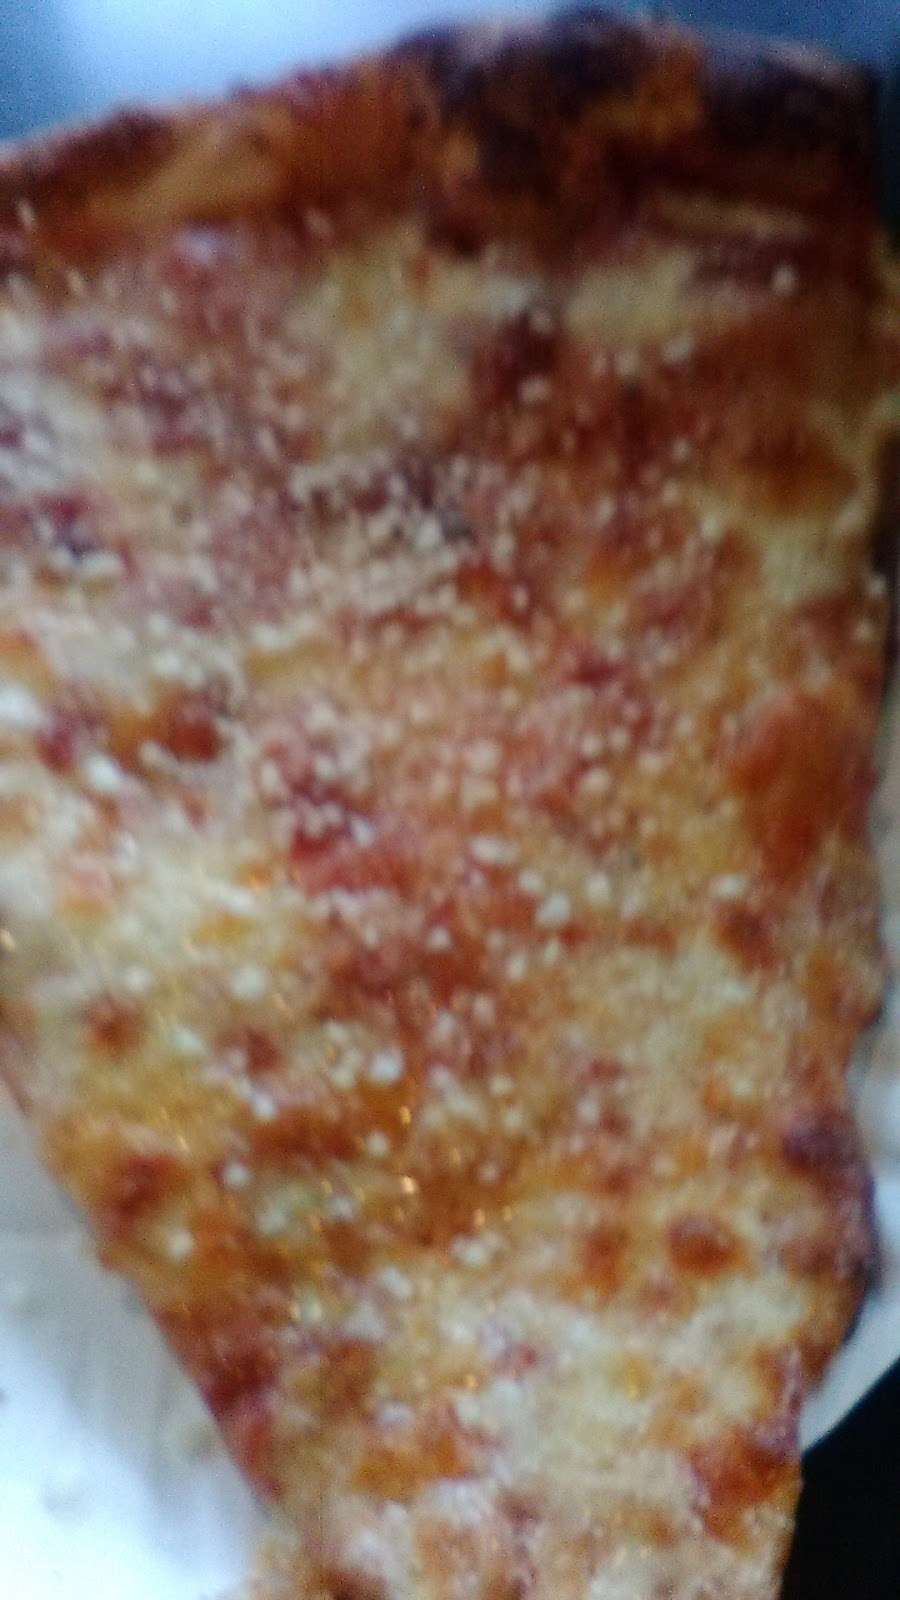 Jonny Ds Pizza | 946 New York Ave, Huntington, NY 11743 | Phone: (631) 385-4444